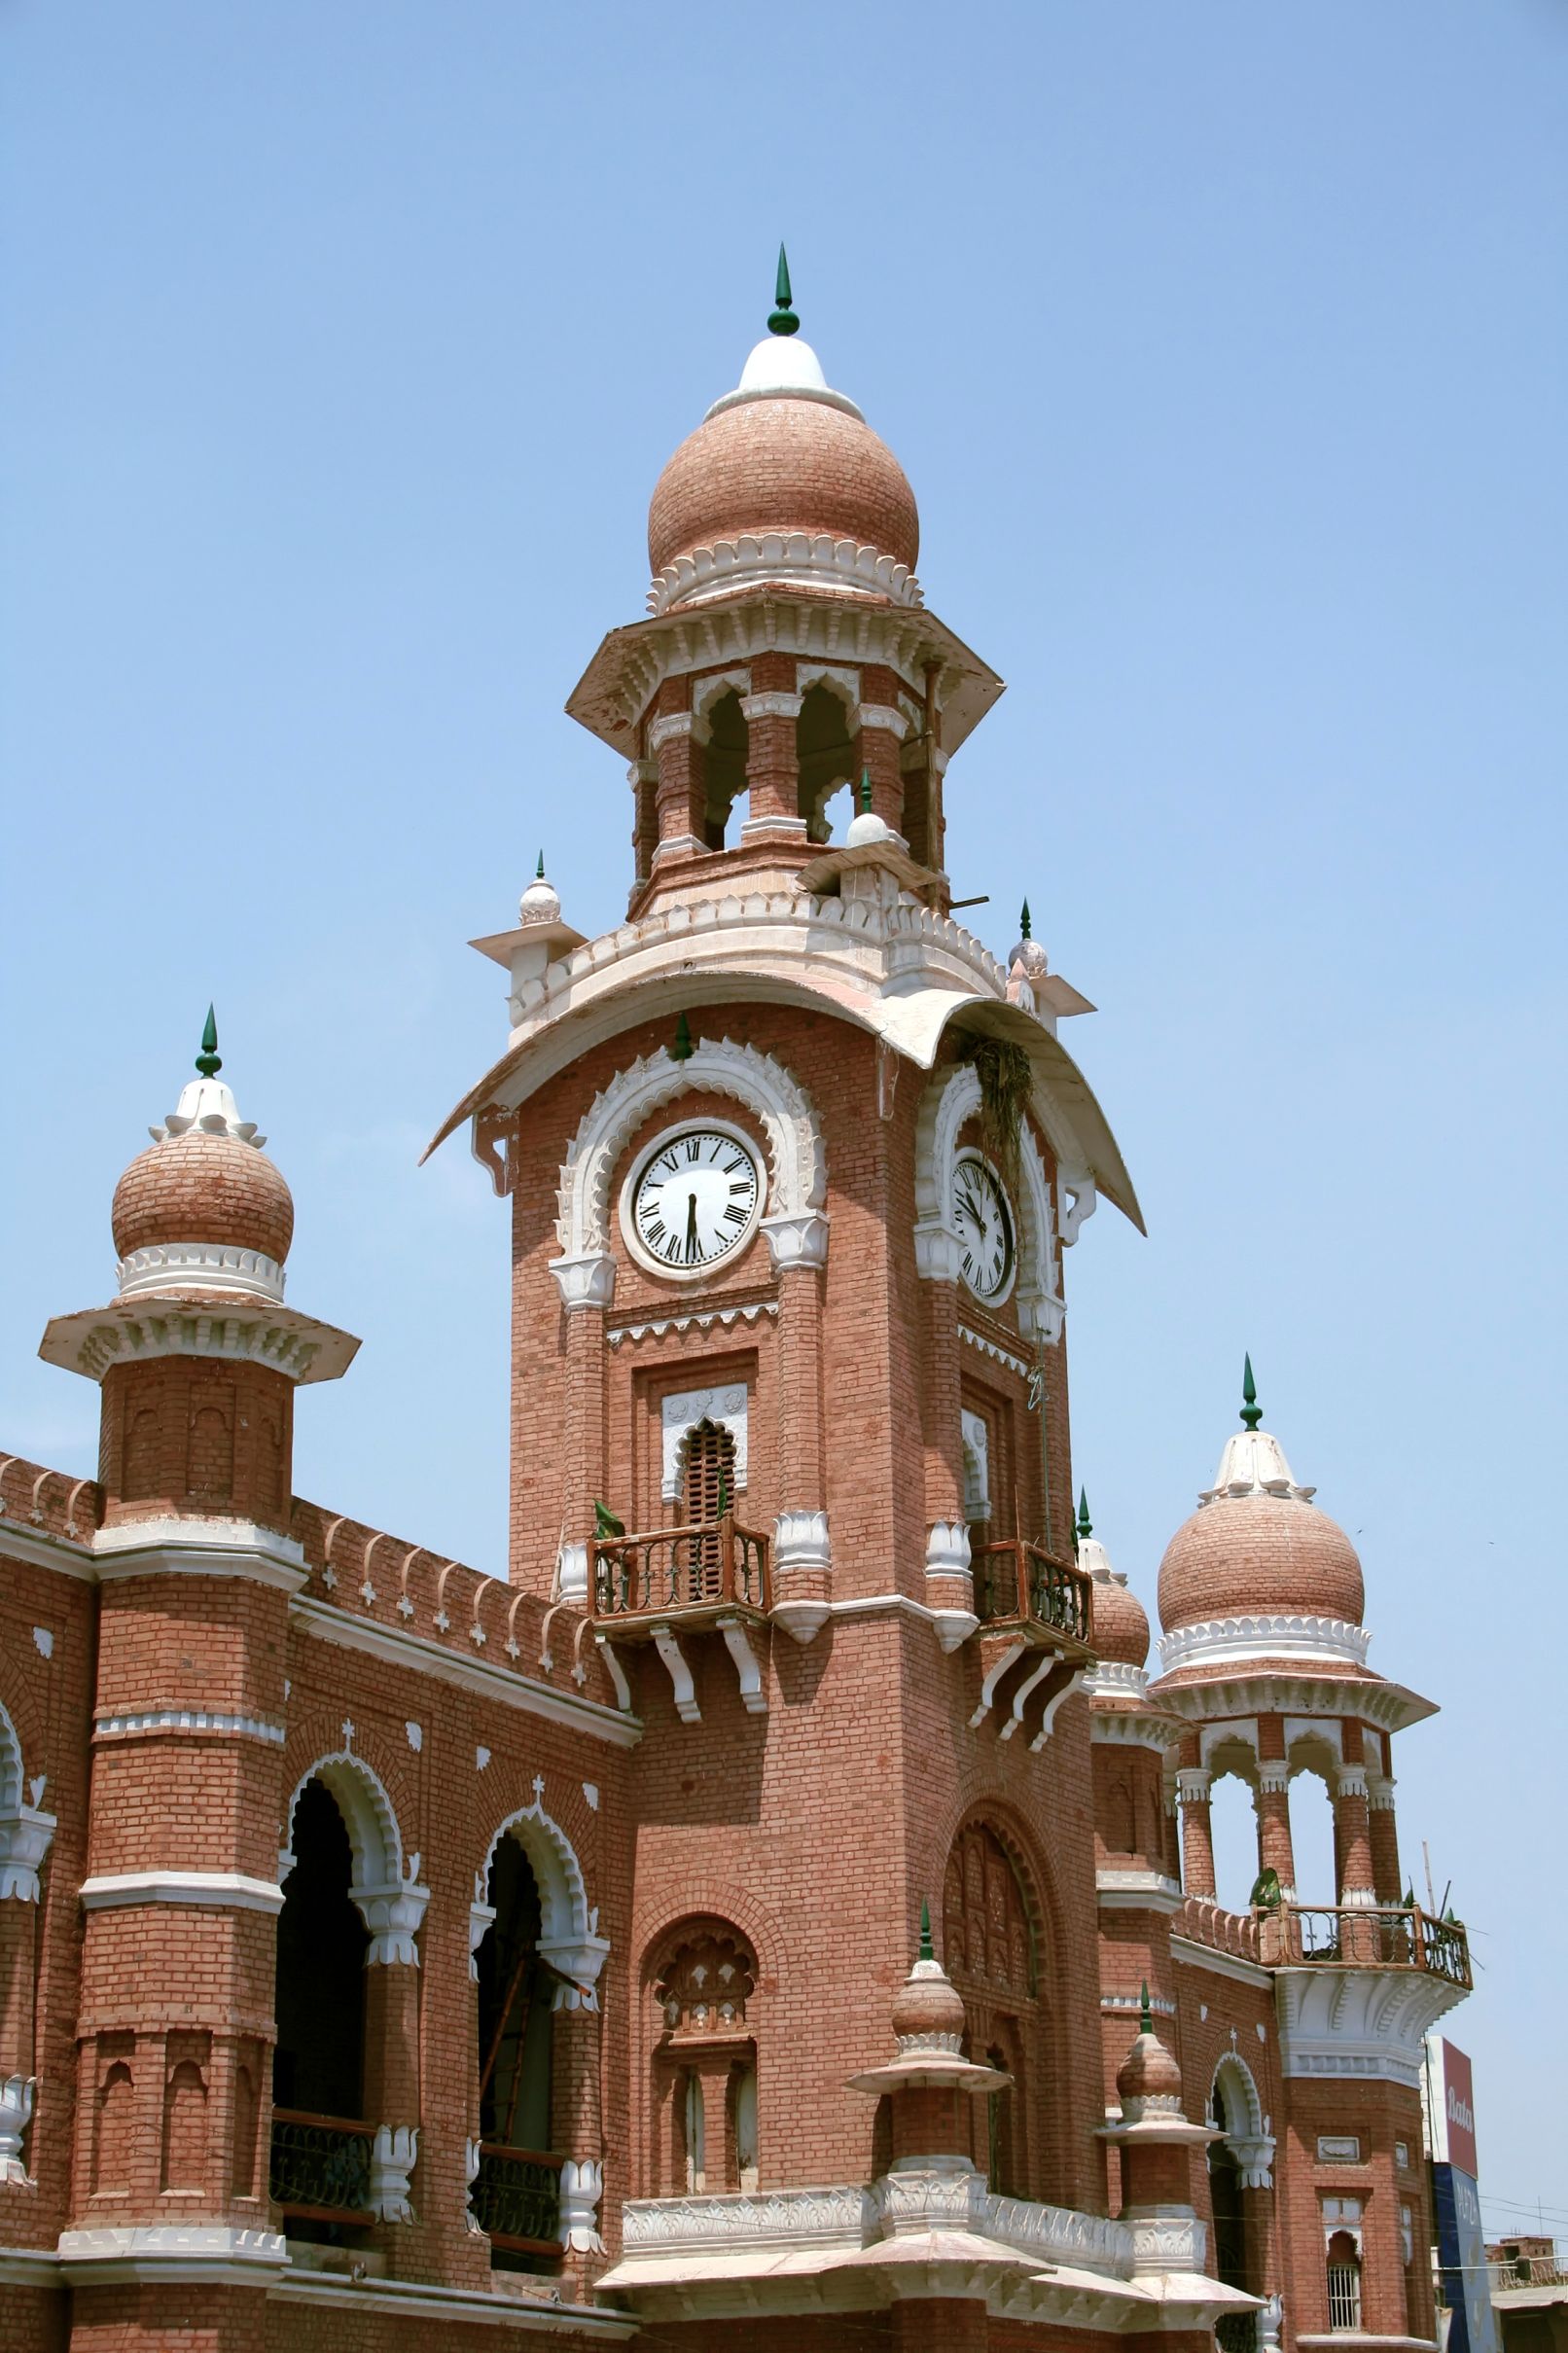 Tour de l'horloge De Multan.